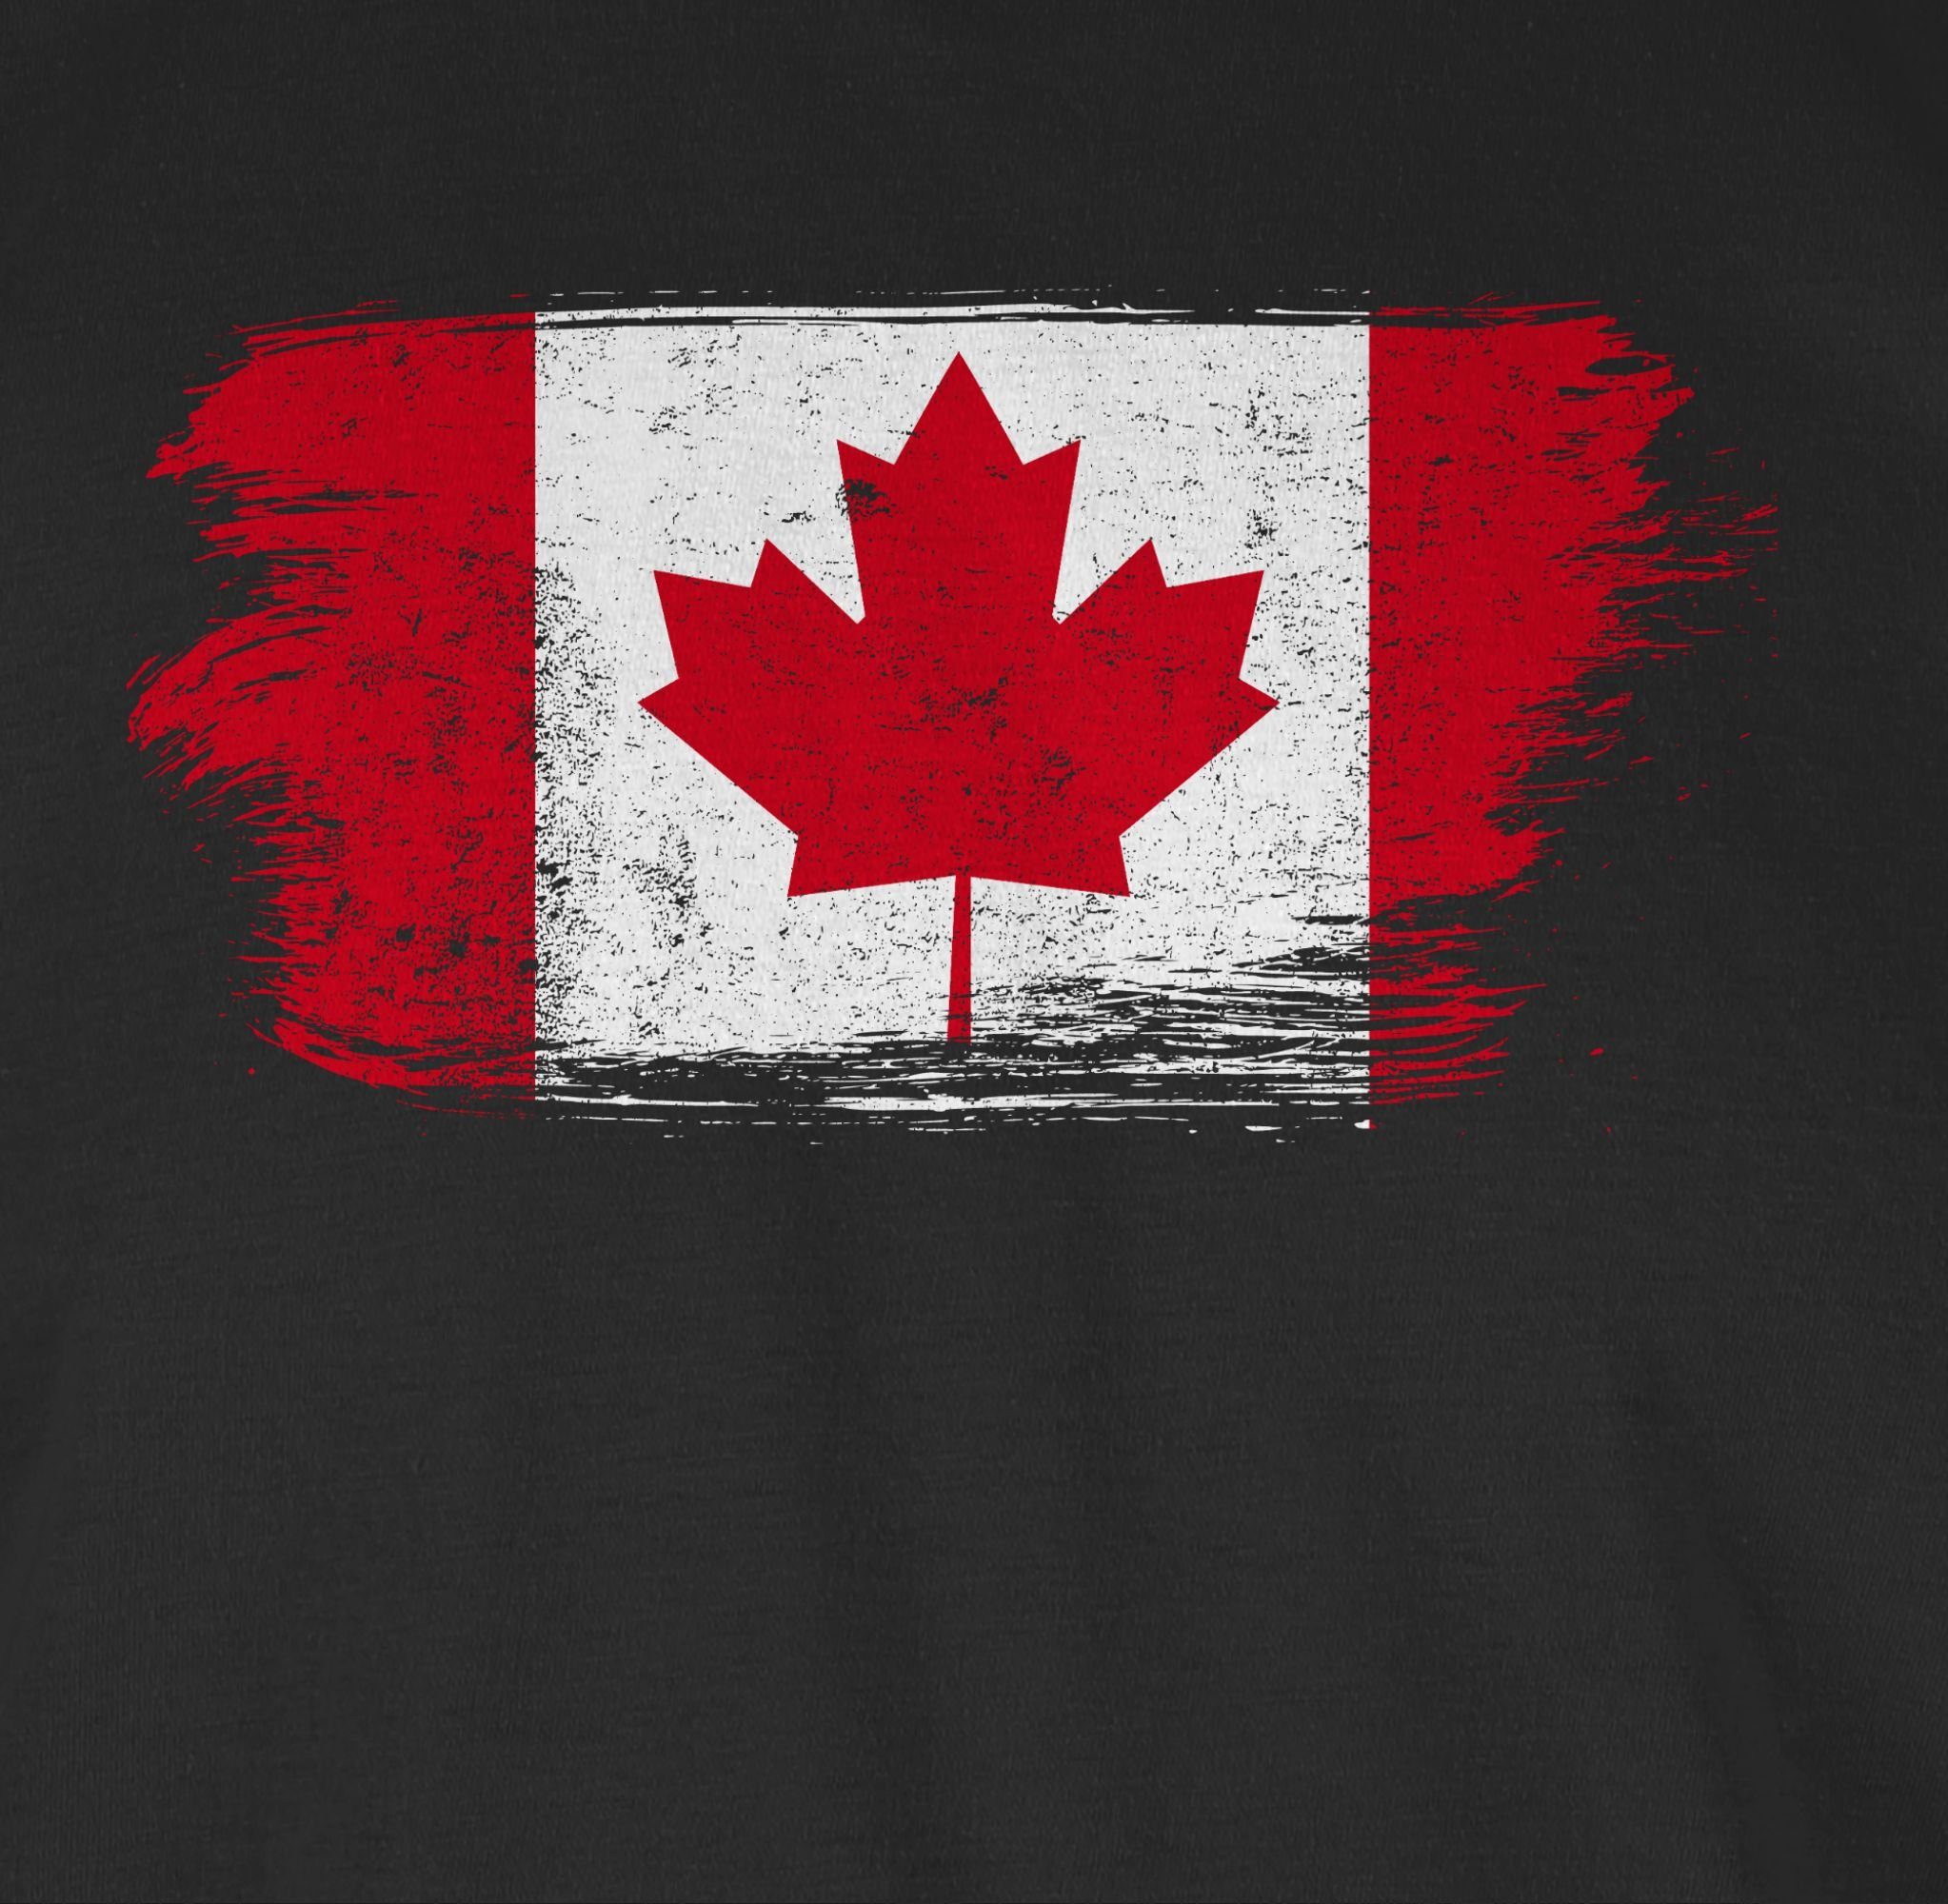 Länder Kanada Shirtracer 1 T-Shirt Vintage Schwarz Wappen